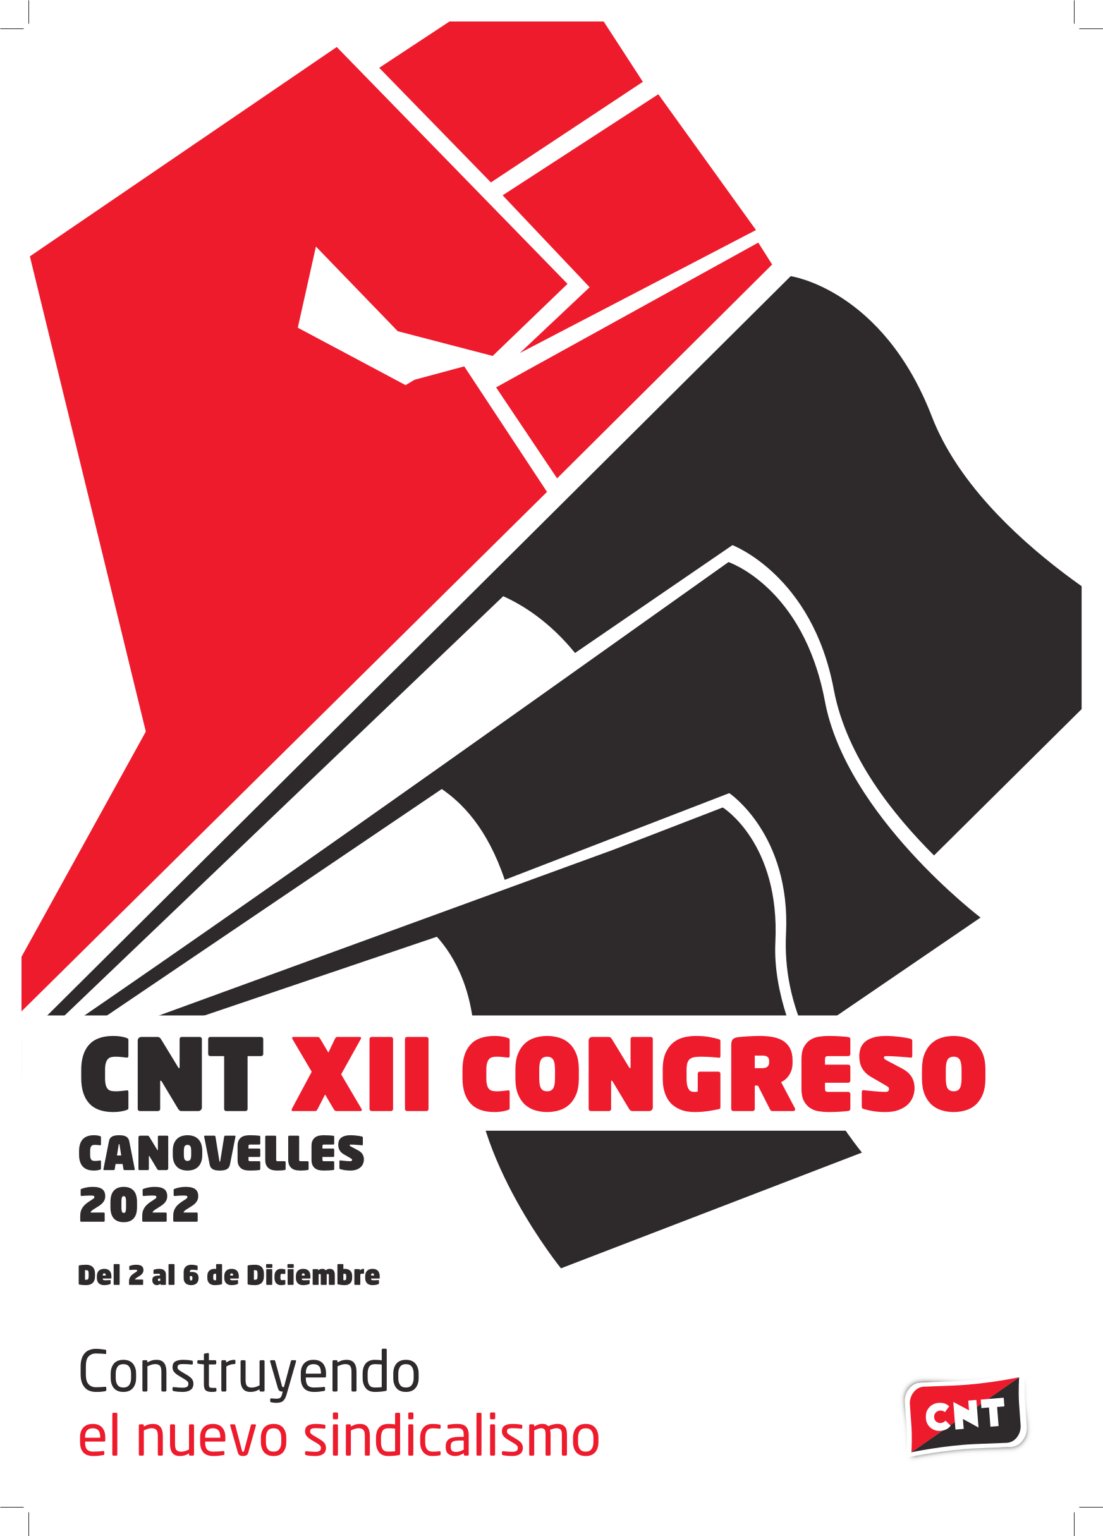 Cartel del Congreso Confederal.
Canovelles 2022.
Del 2 al 6 de Diciembre.
Construyendo el nuevo sindicalismo.
CNT